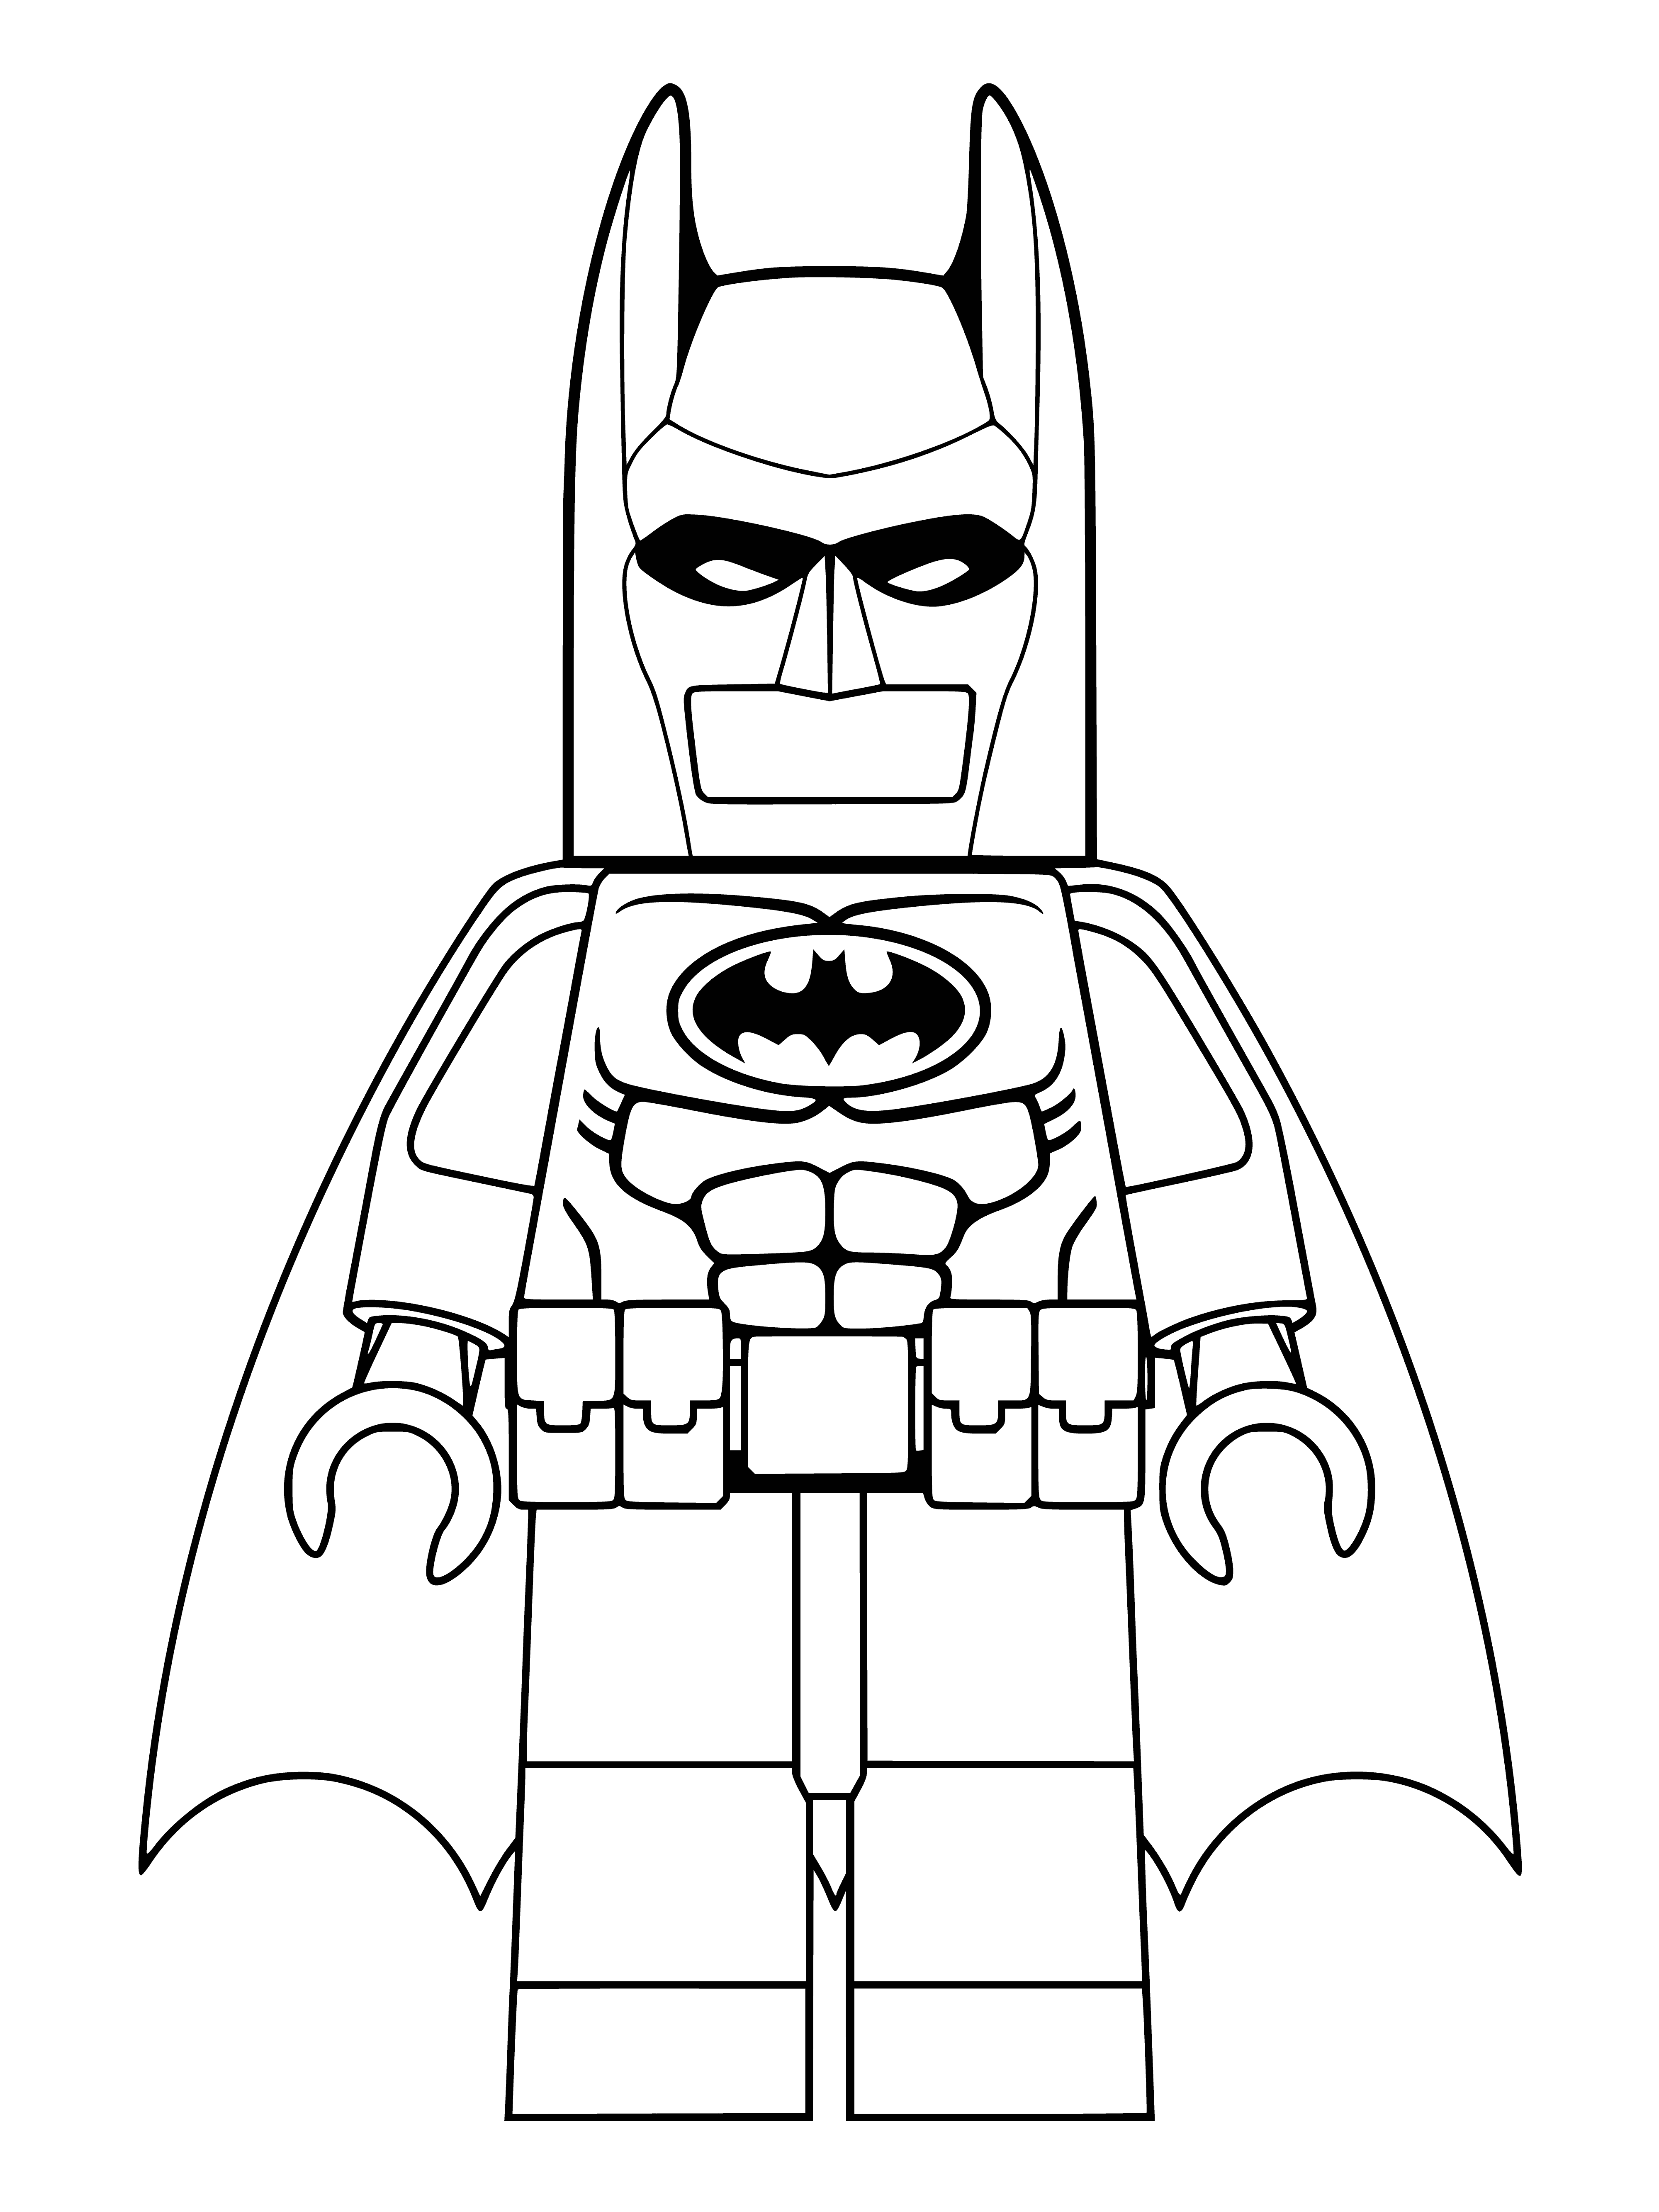 Lego batman coloring page